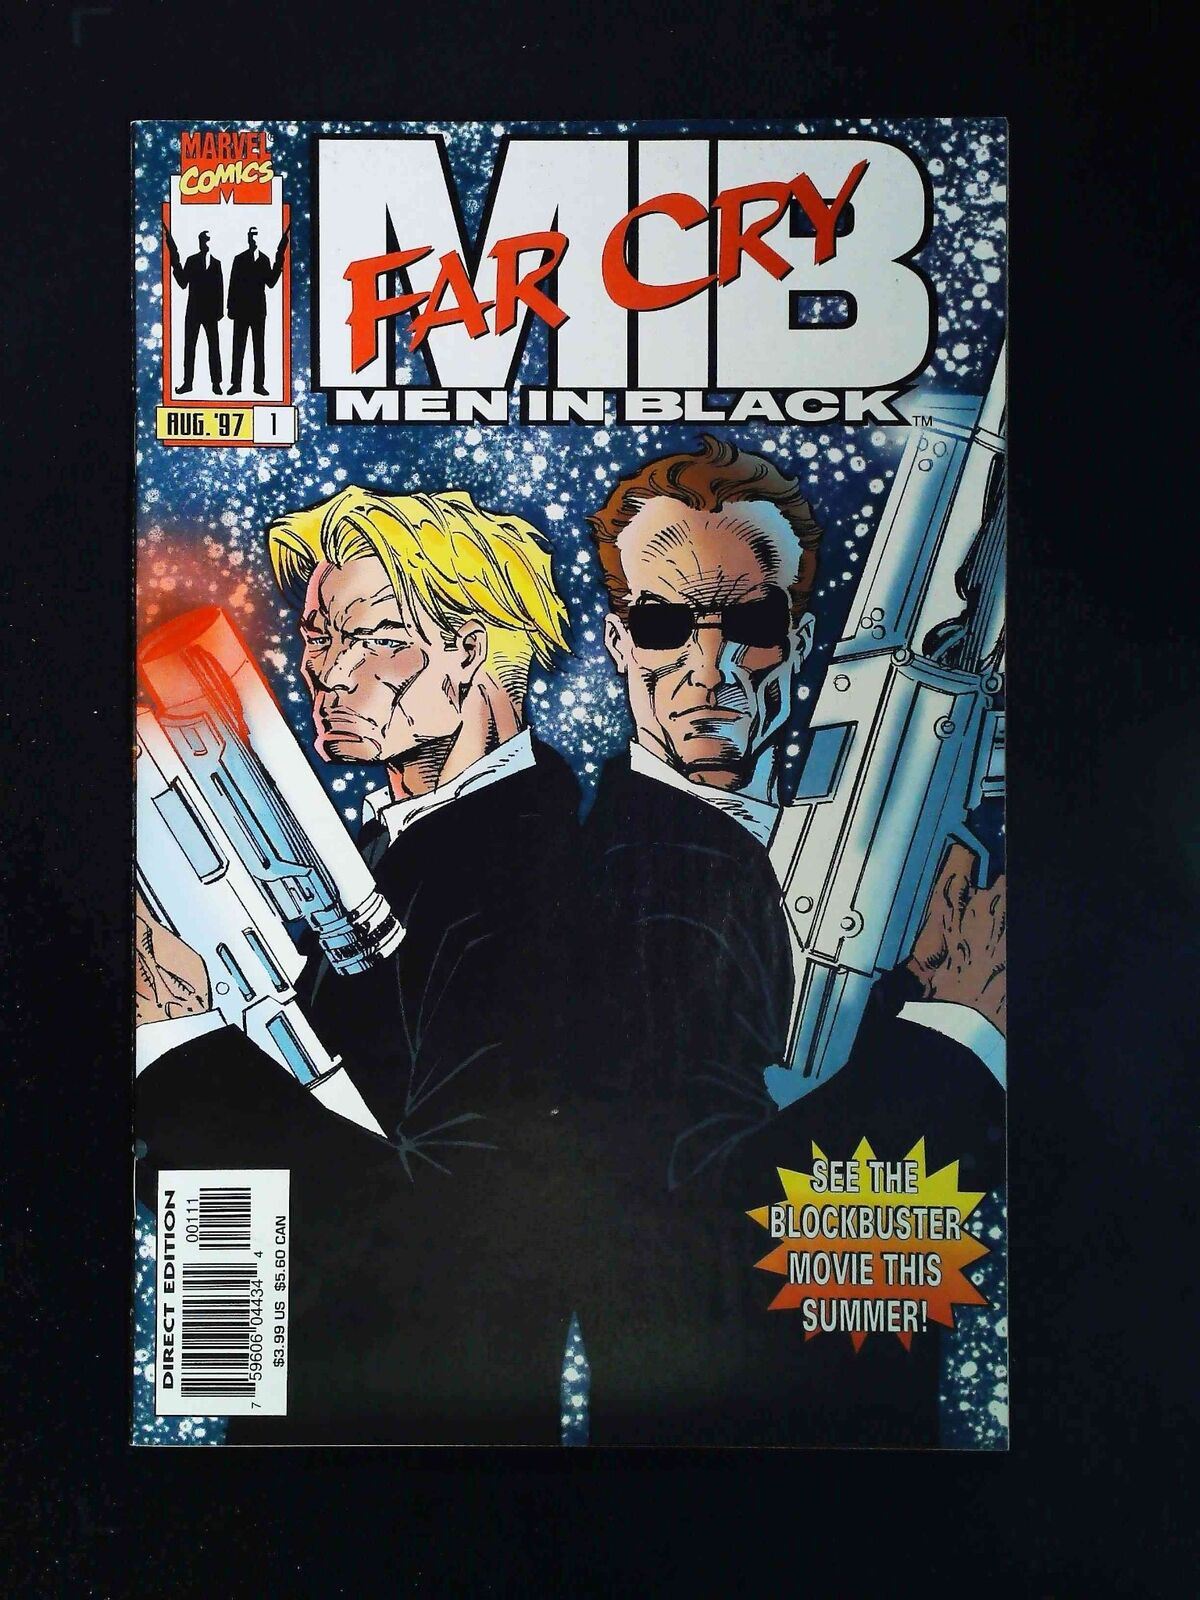 Men In Black Far Cry #1  Marvel Comics 1997 Vf/Nm